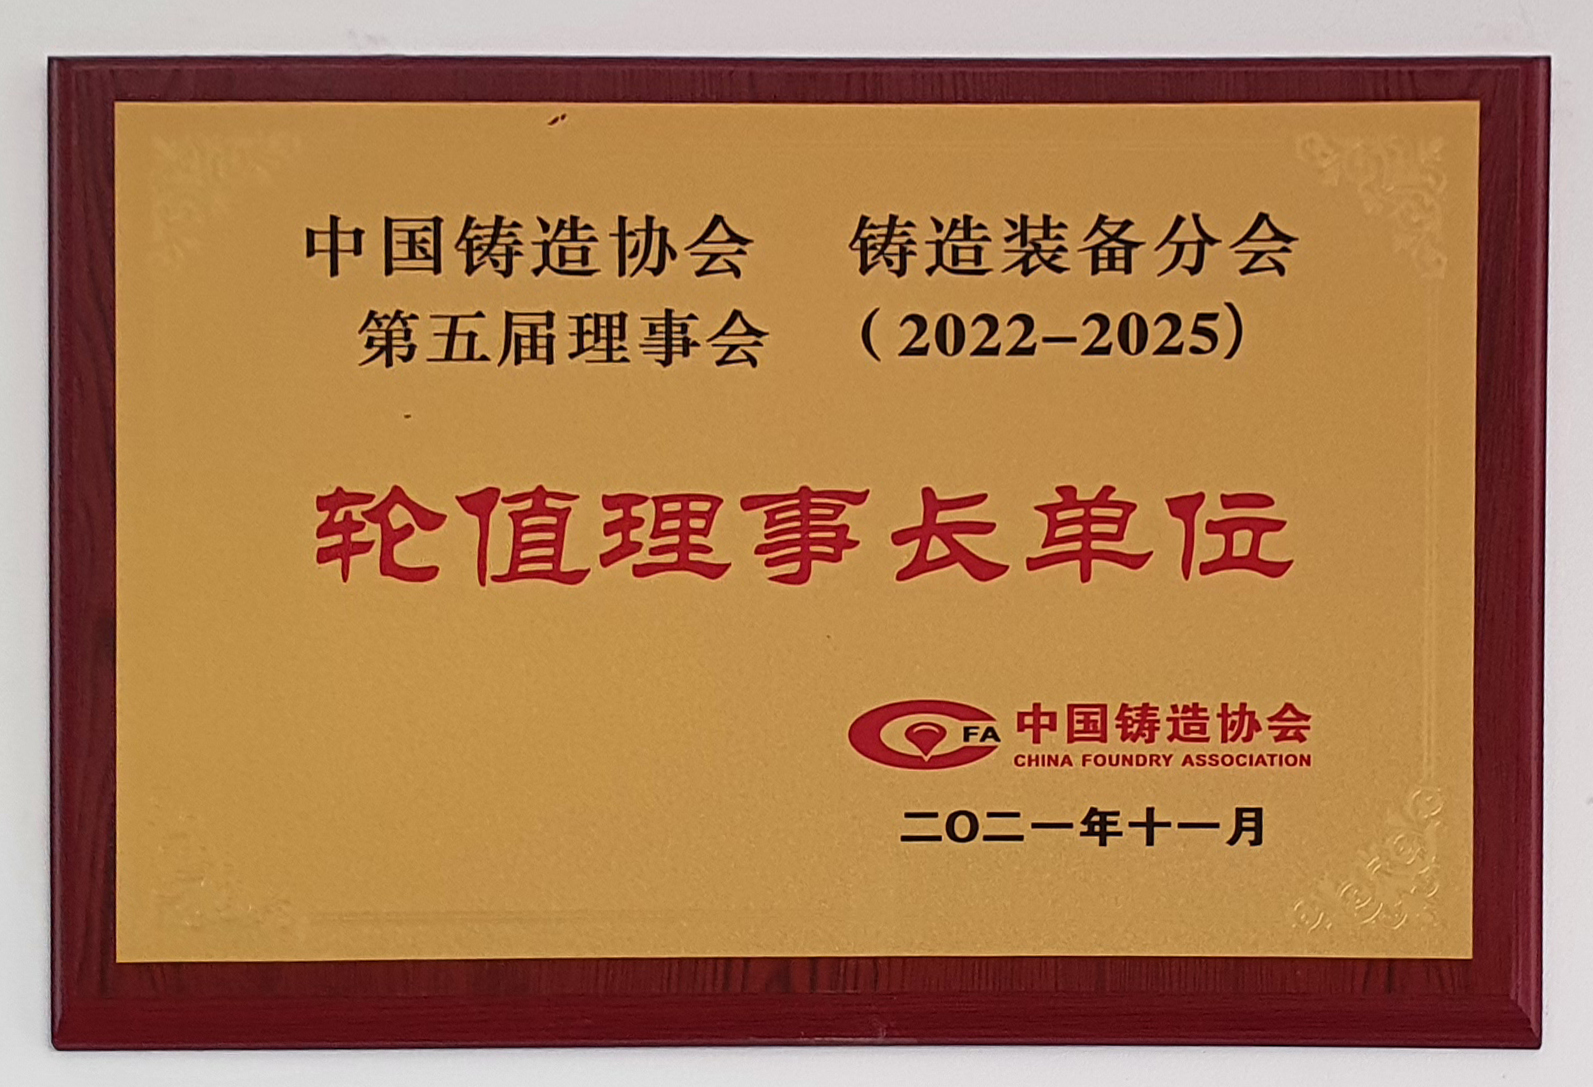 中國鑄造協會鑄造裝備分會輪值理事長單位